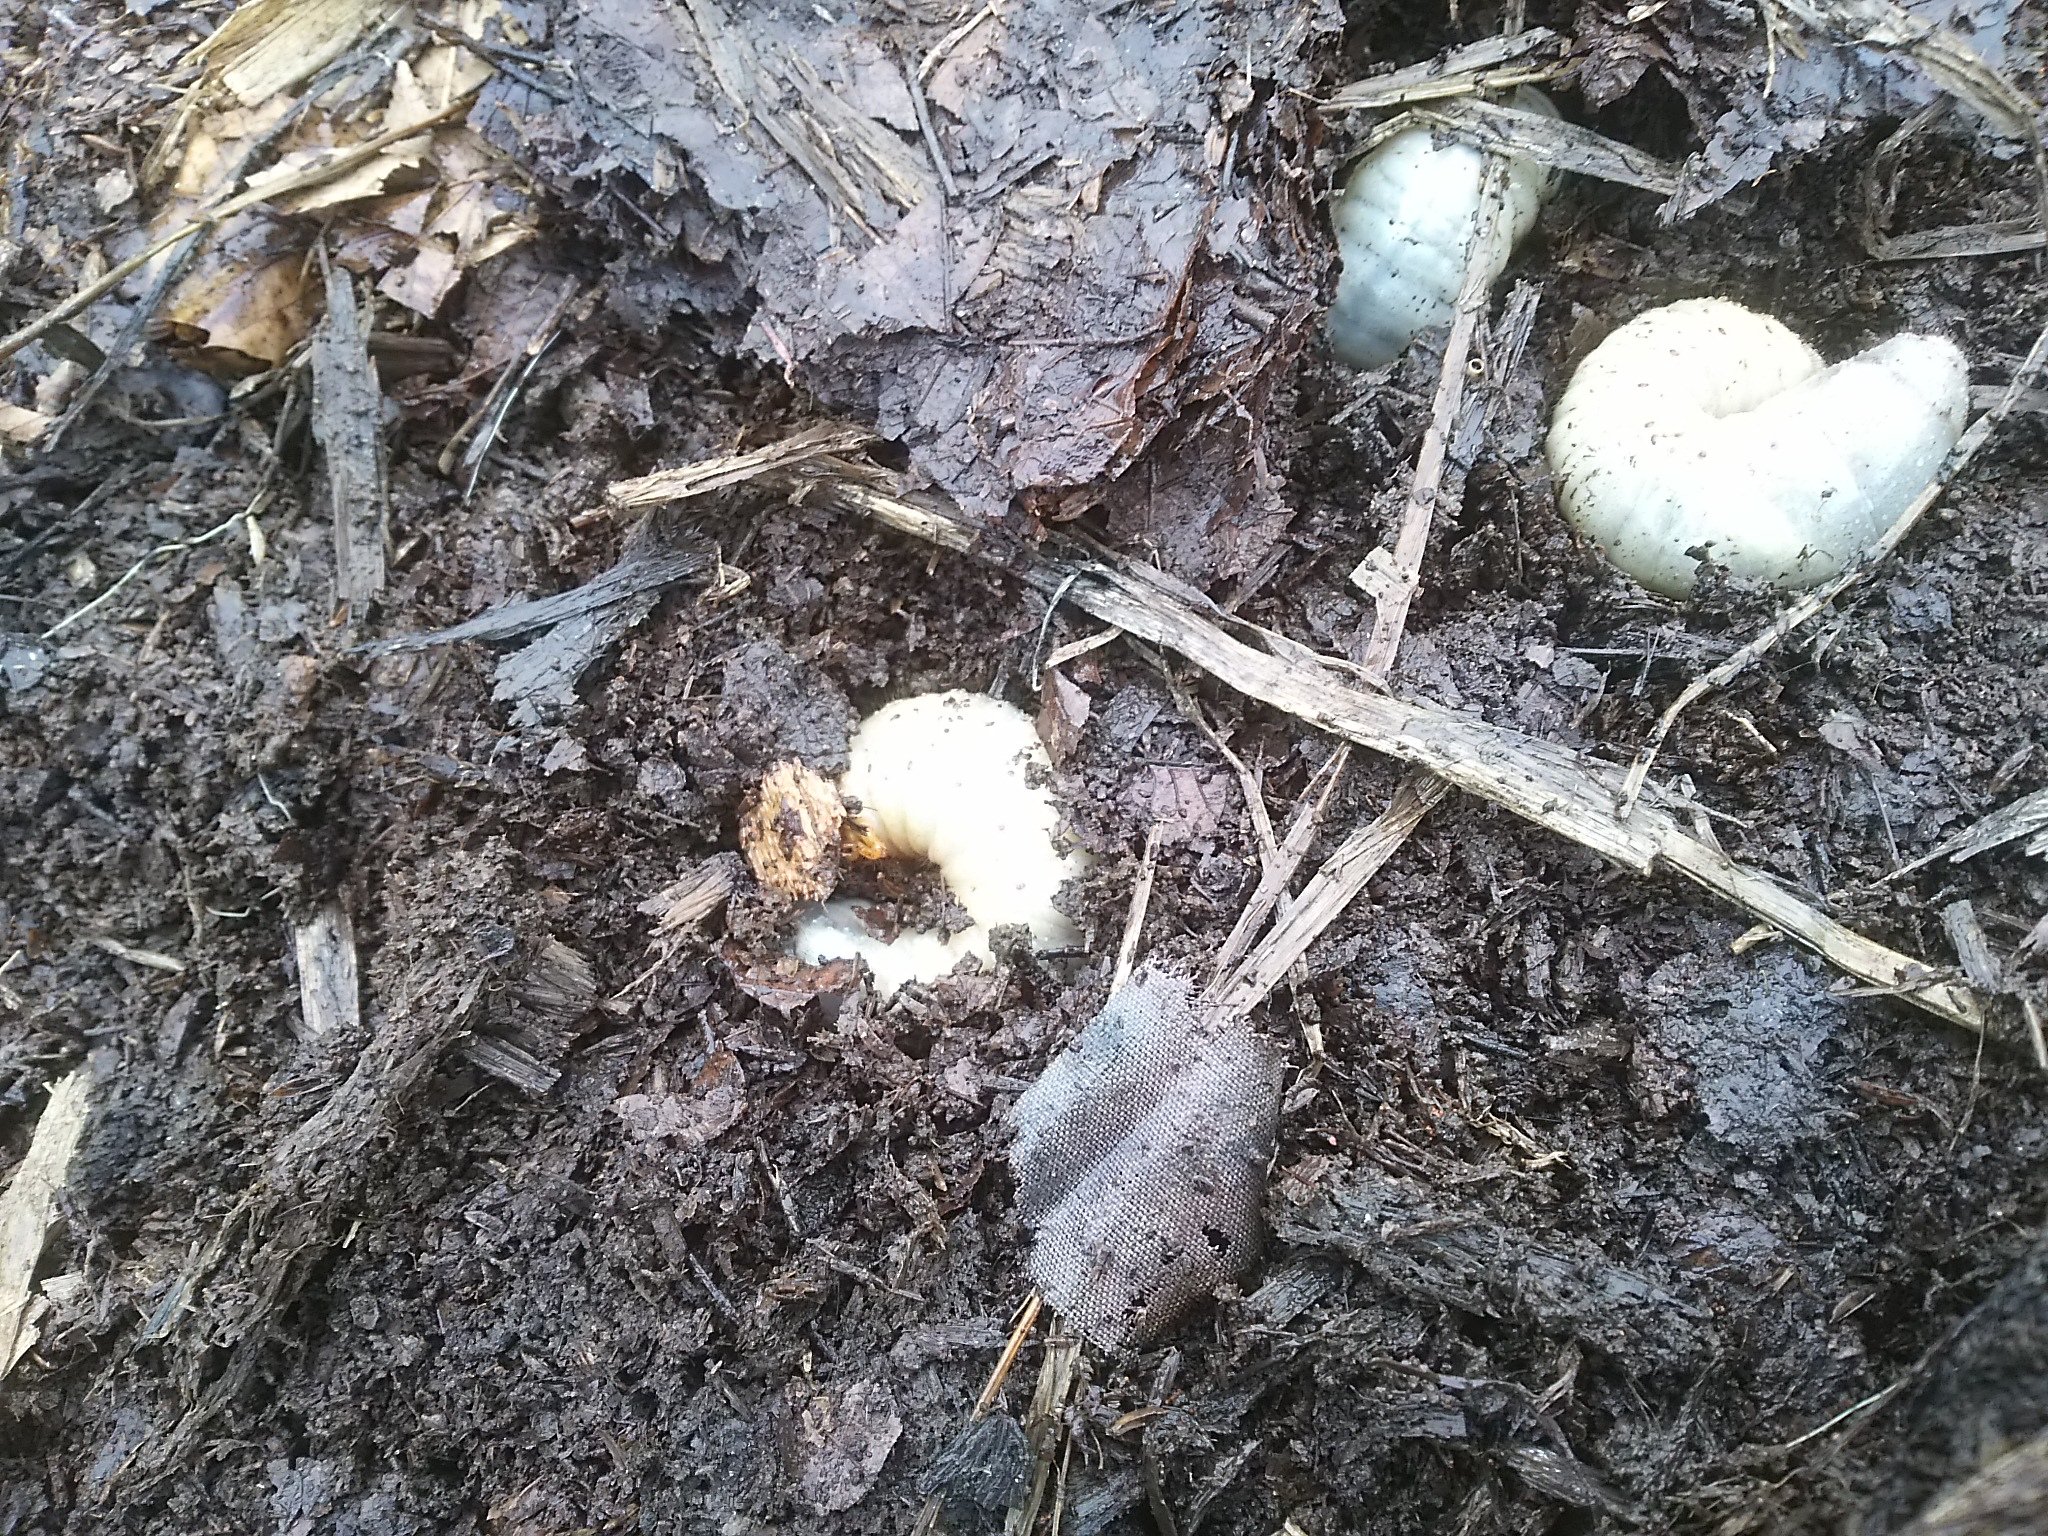 踏み込み温床でできた腐葉土で生きるカブトムシの幼虫